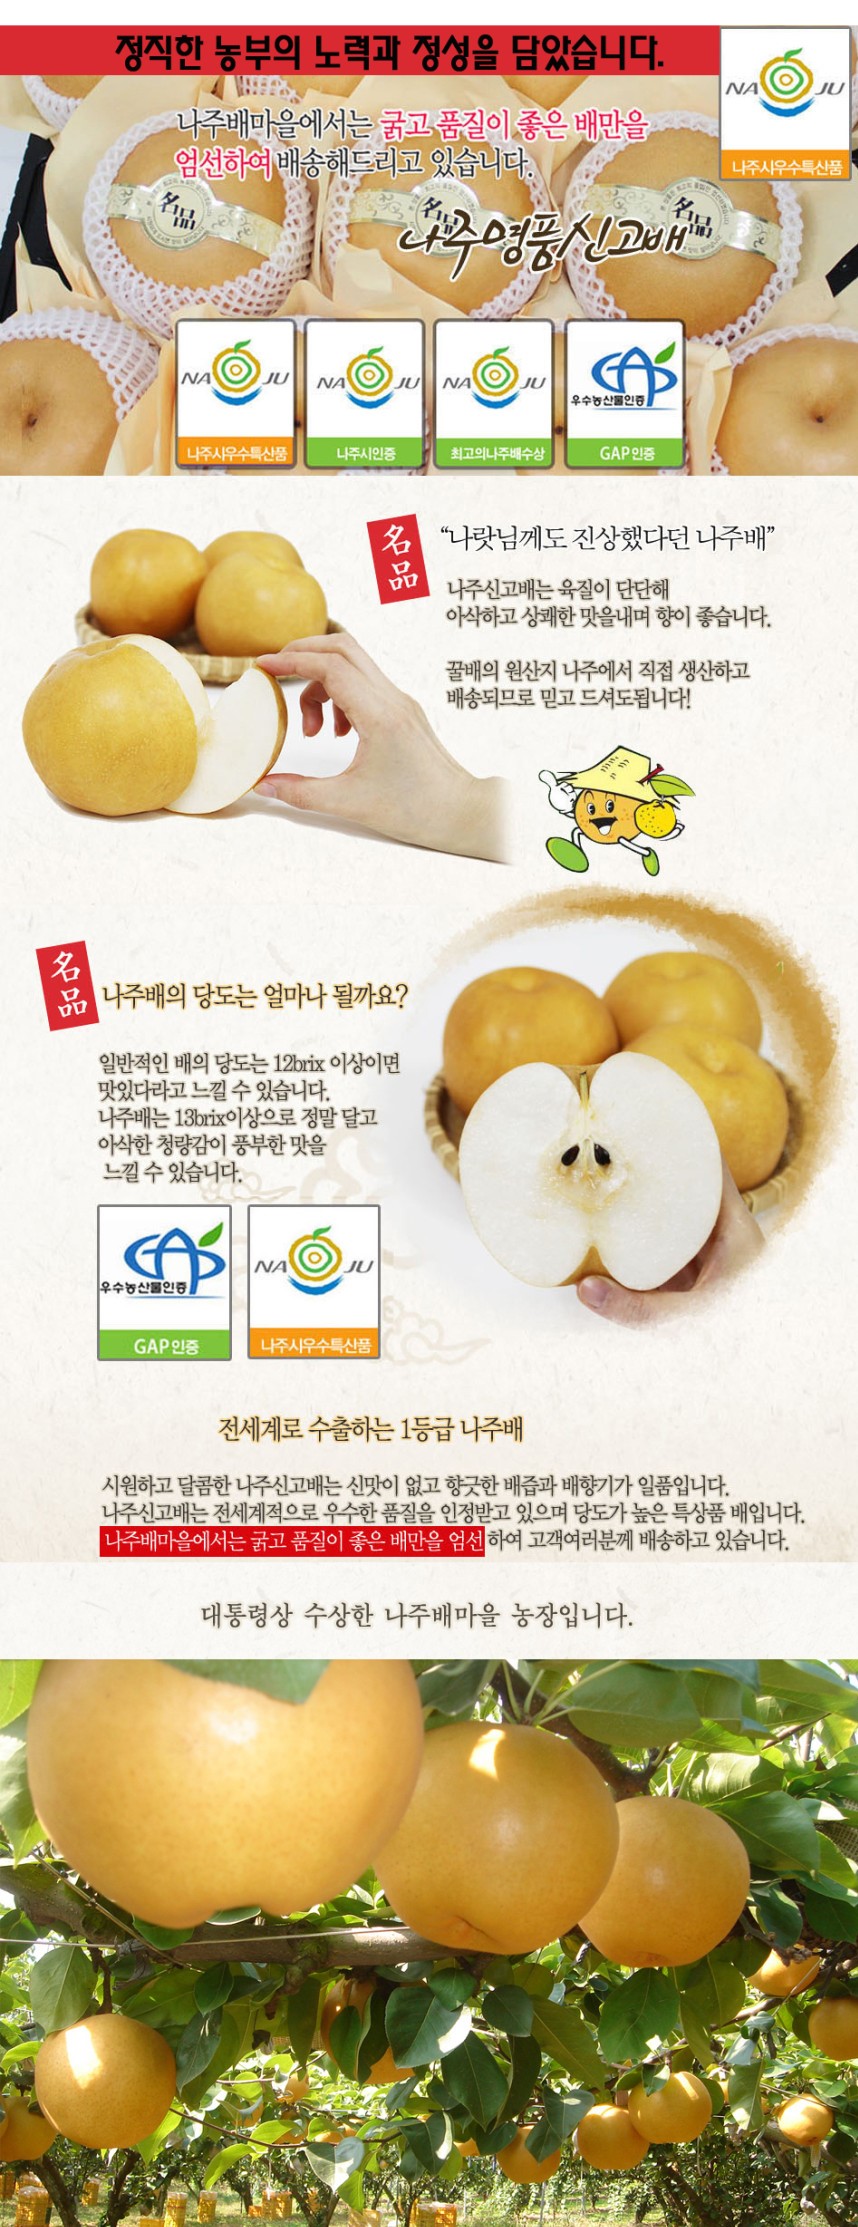 韓國食品-[$70 for 2ea ] 배사랑 우리배 명품배 1ea